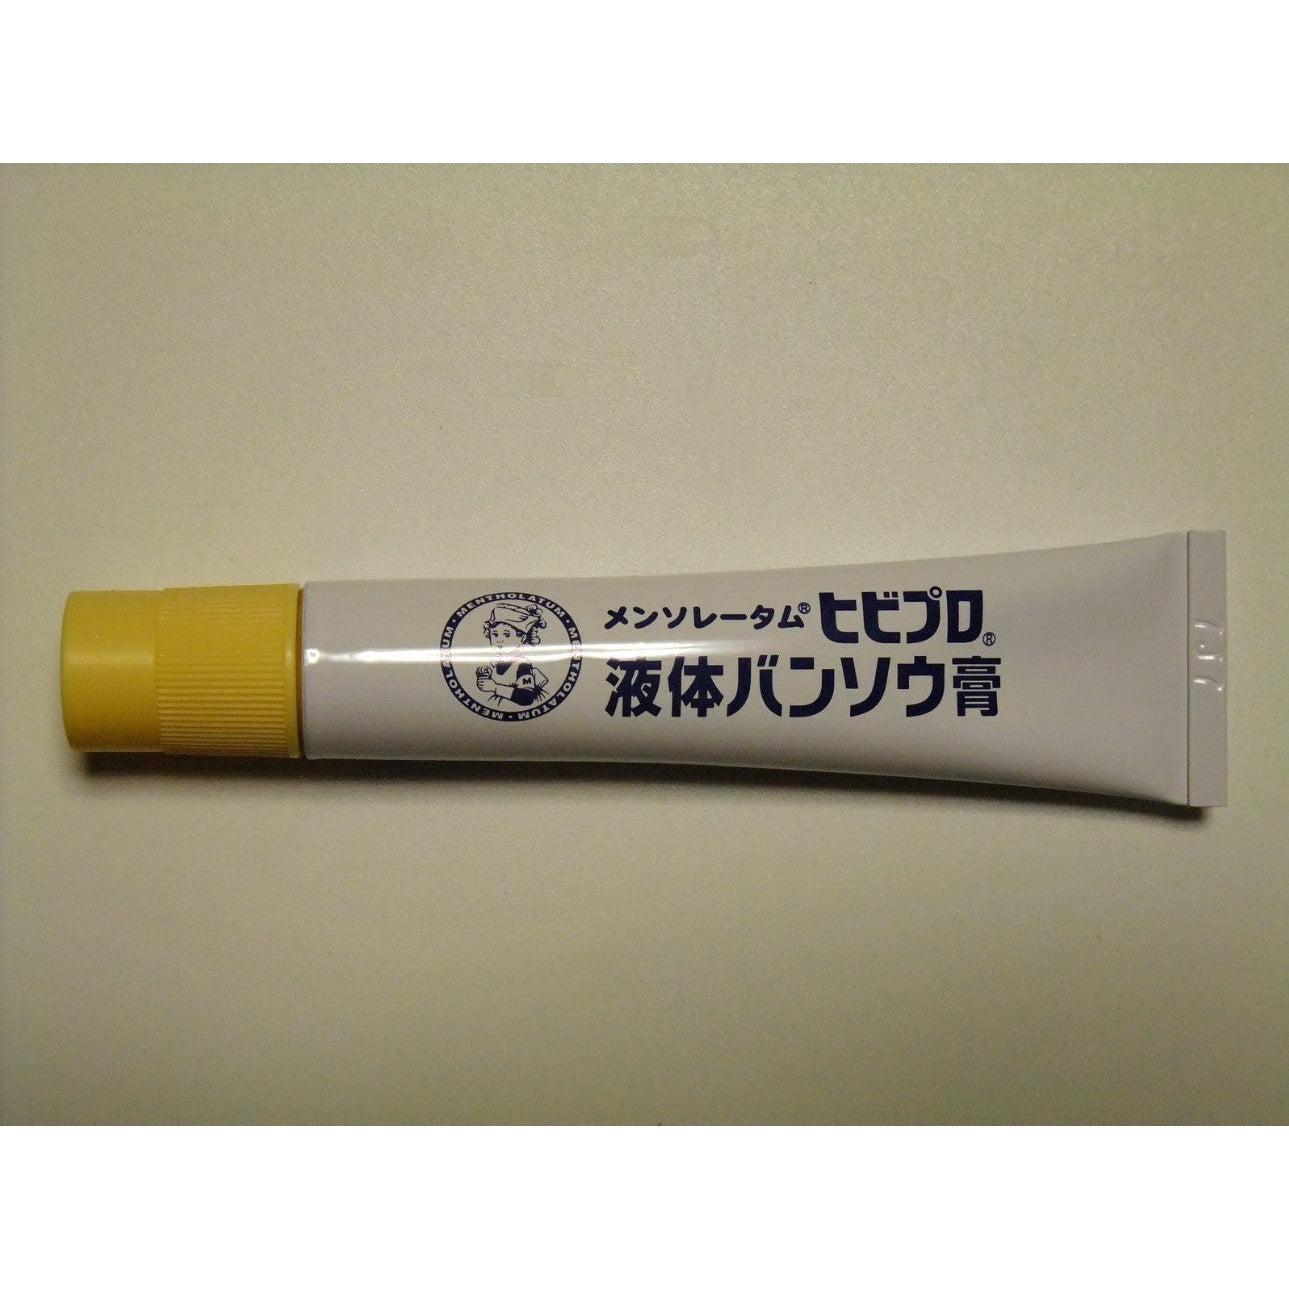 Rohto Mentholatum Japanese Liquid Bandage 10g